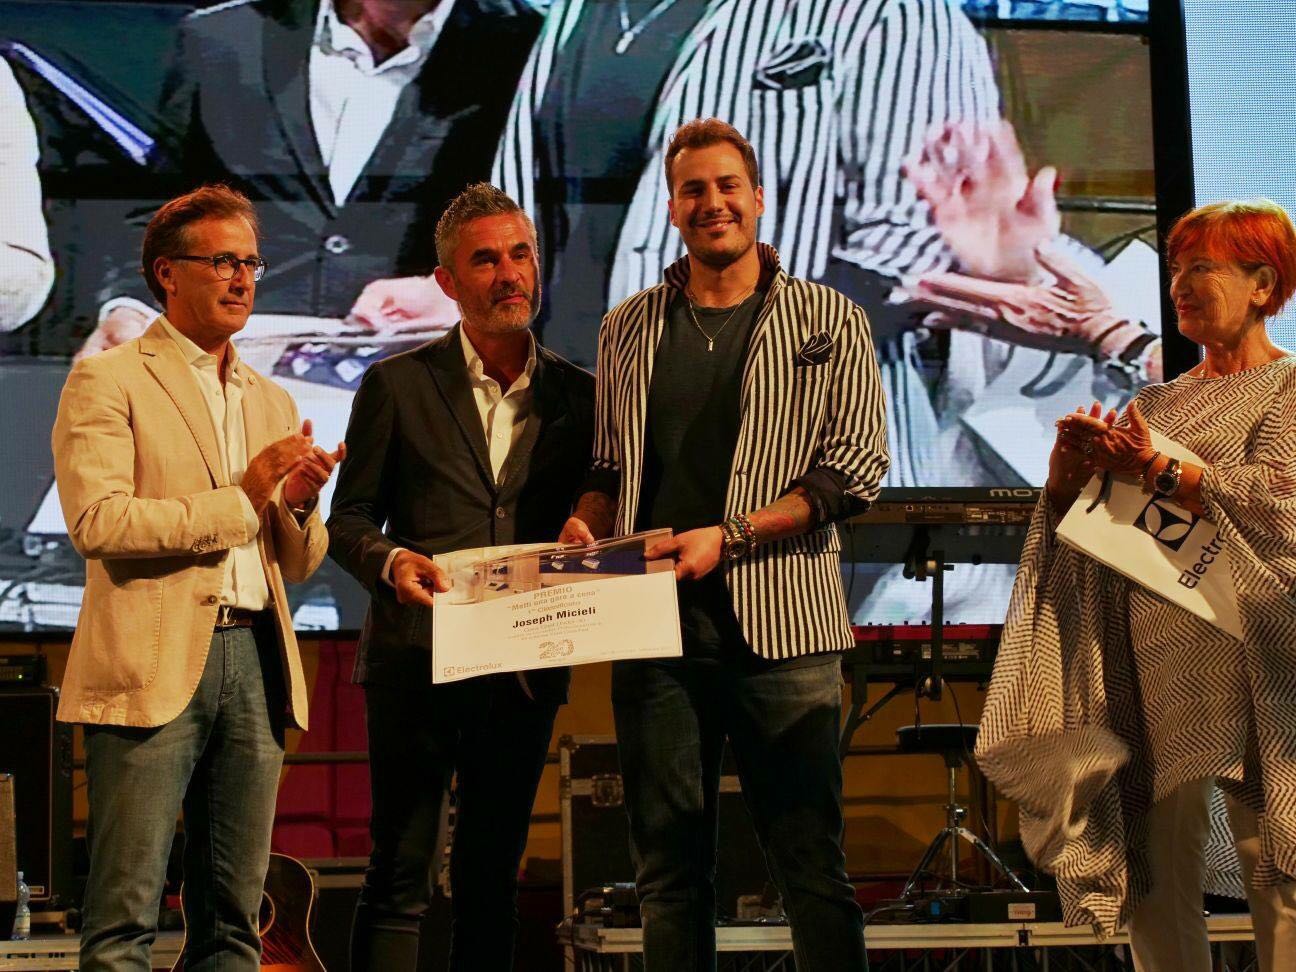  Cous Cous Festival: Joseph Micieli vince il titolo di Chef Electrolux Italia U-30